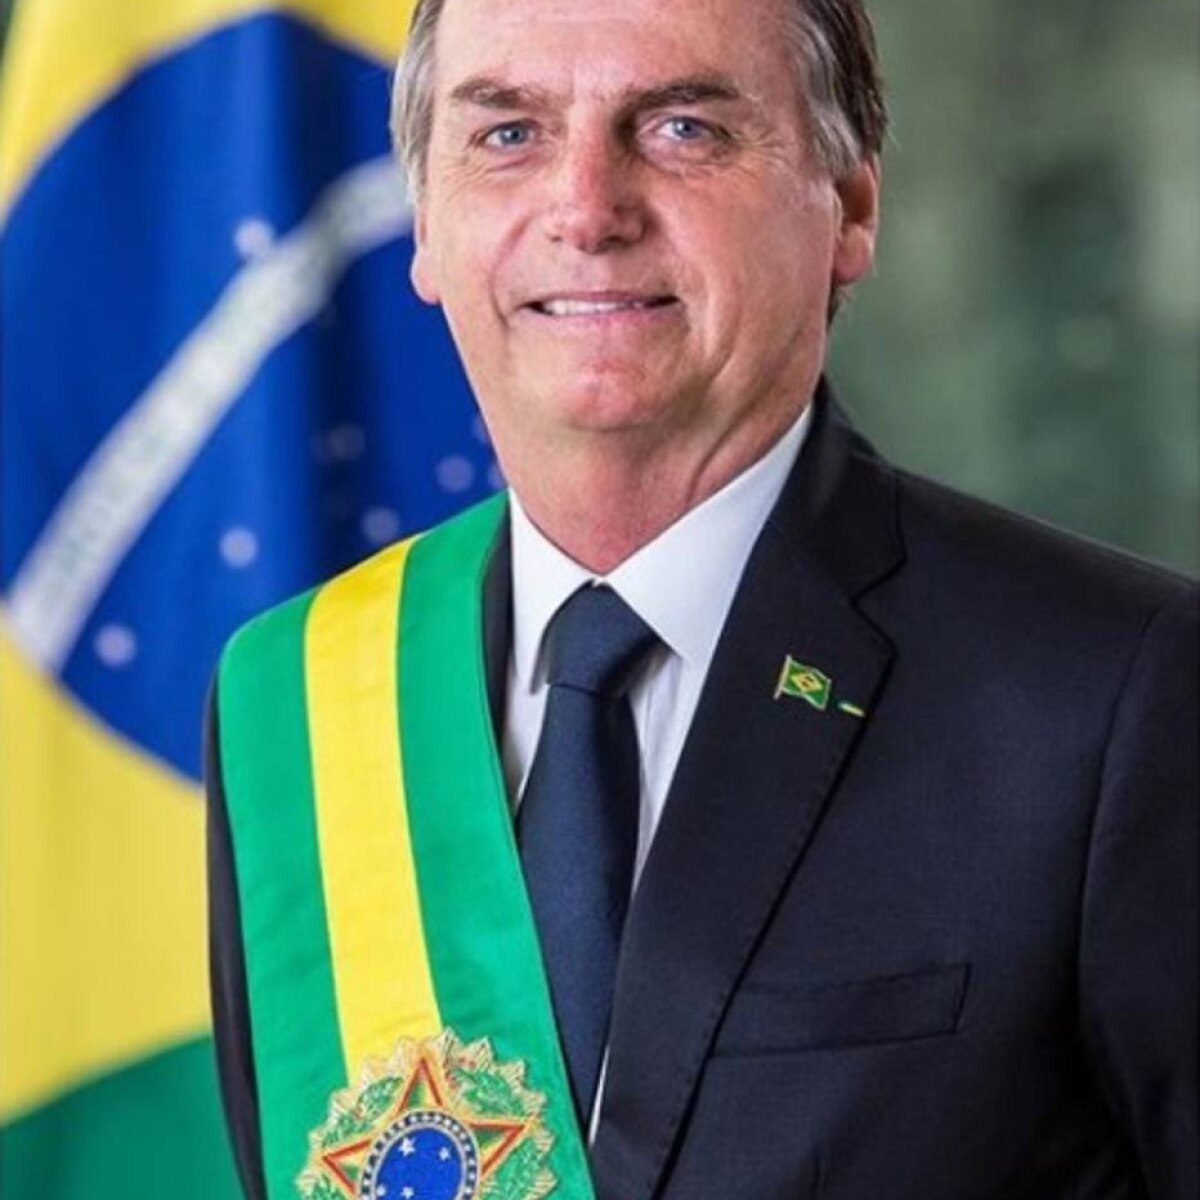 Bolsonaro divulga foto oficial com a faixa presidencial - Política - Estadão